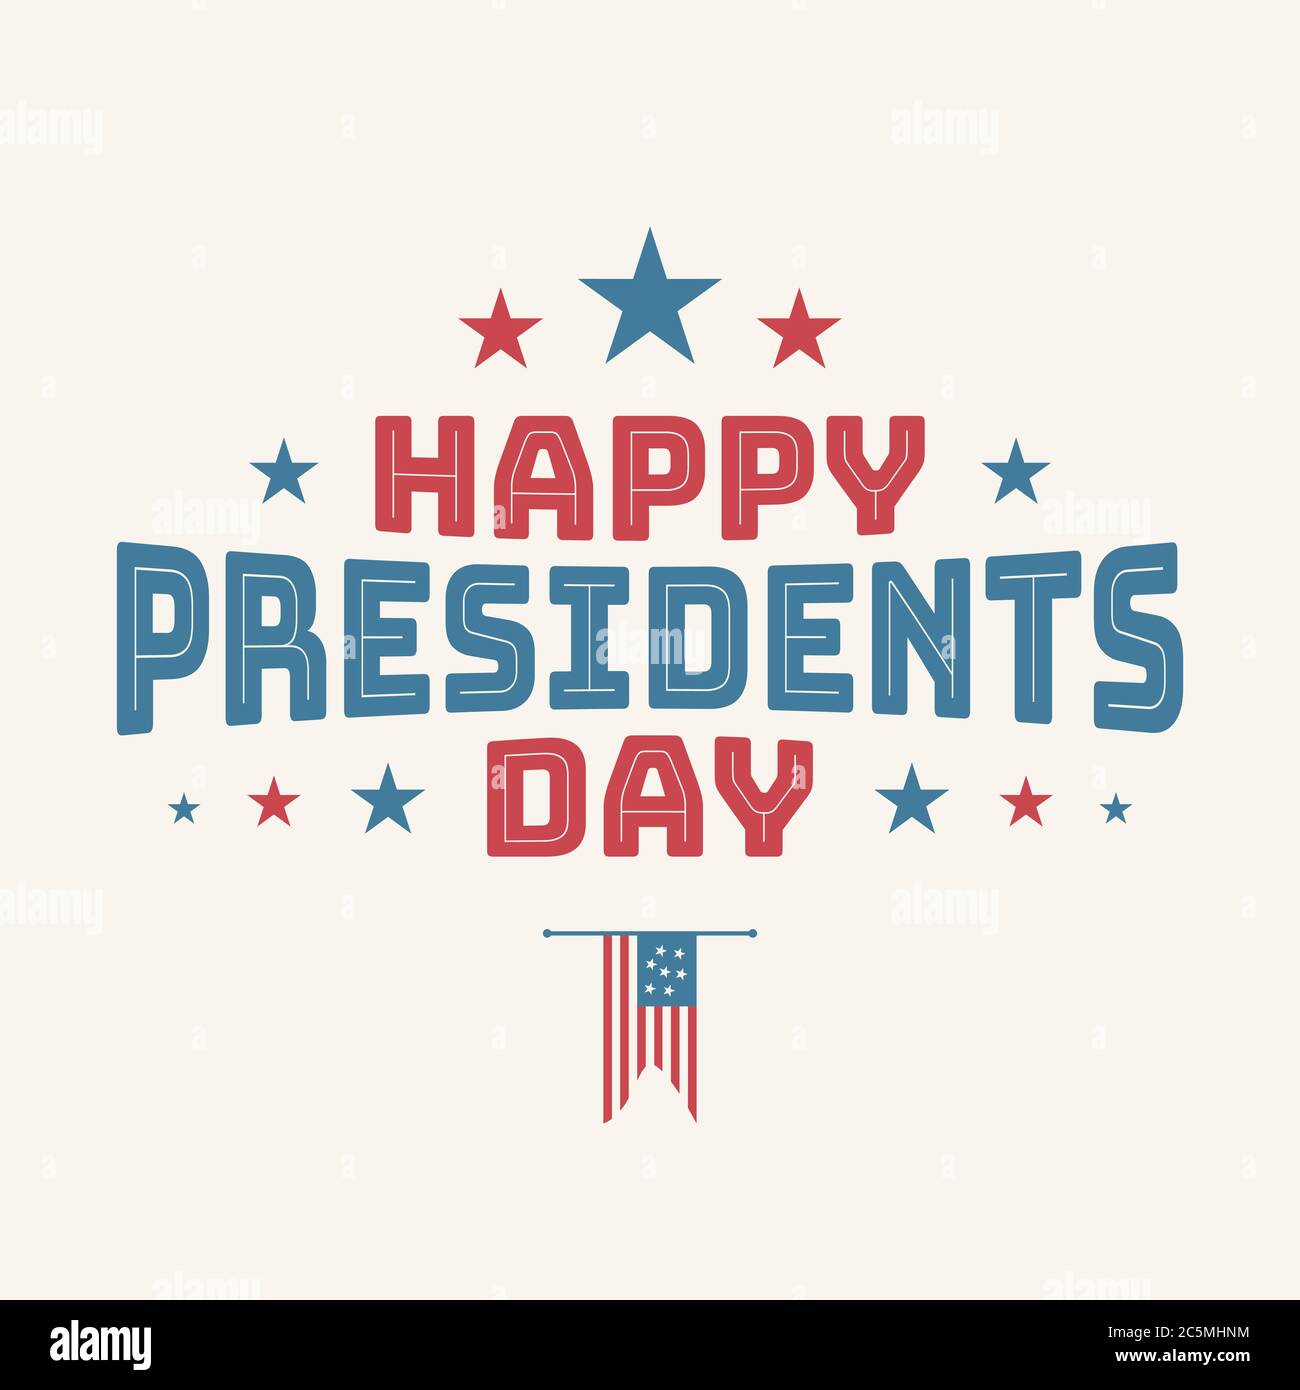 Lettre vintage Happy Presidents Day avec drapeau américain. Illustration vectorielle texte dessiné à la main pour la journée des présidents aux États-Unis. Illustrateur vectoriel Illustration de Vecteur